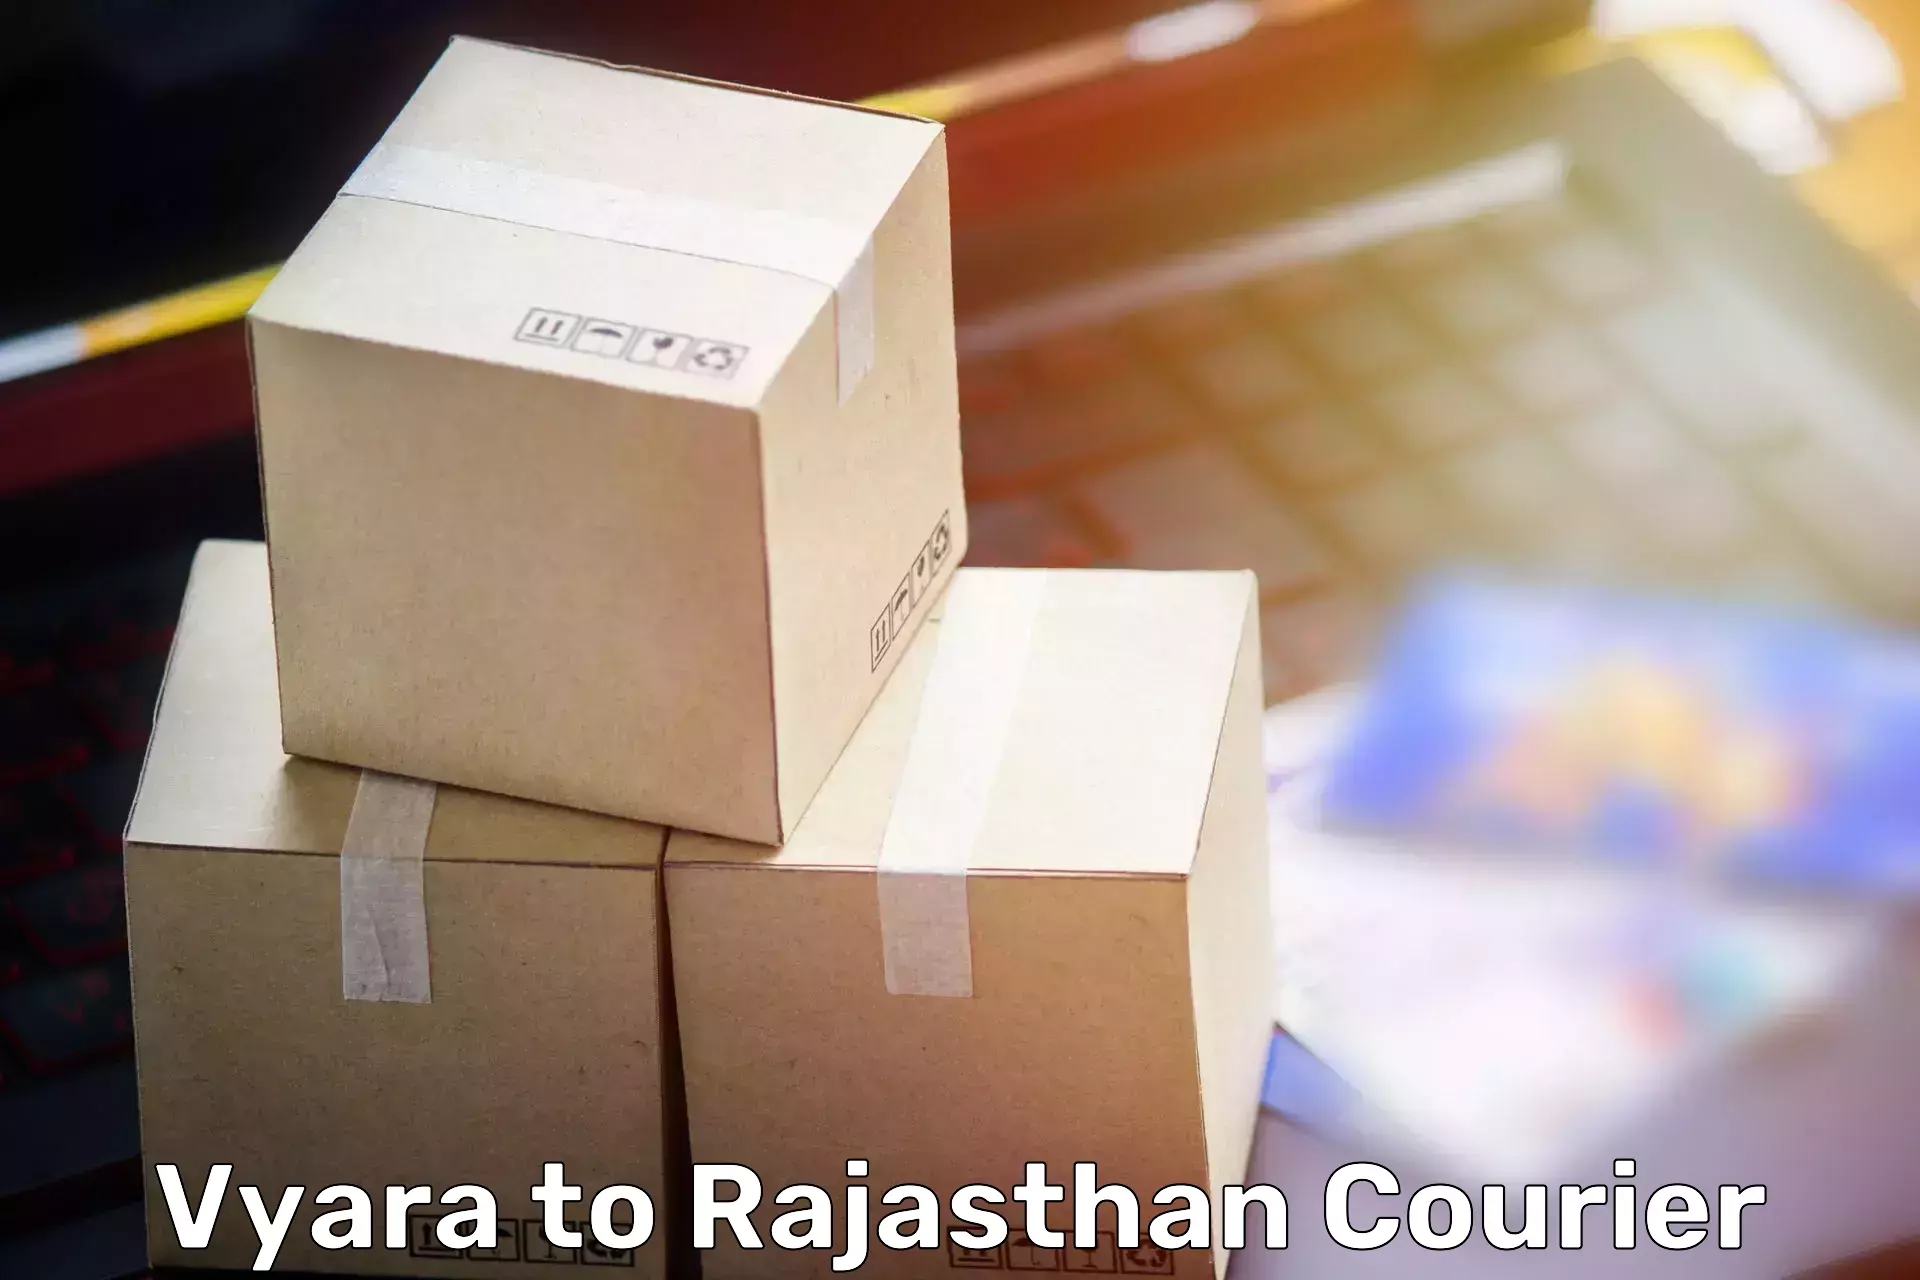 Moving and storage services Vyara to Salumbar